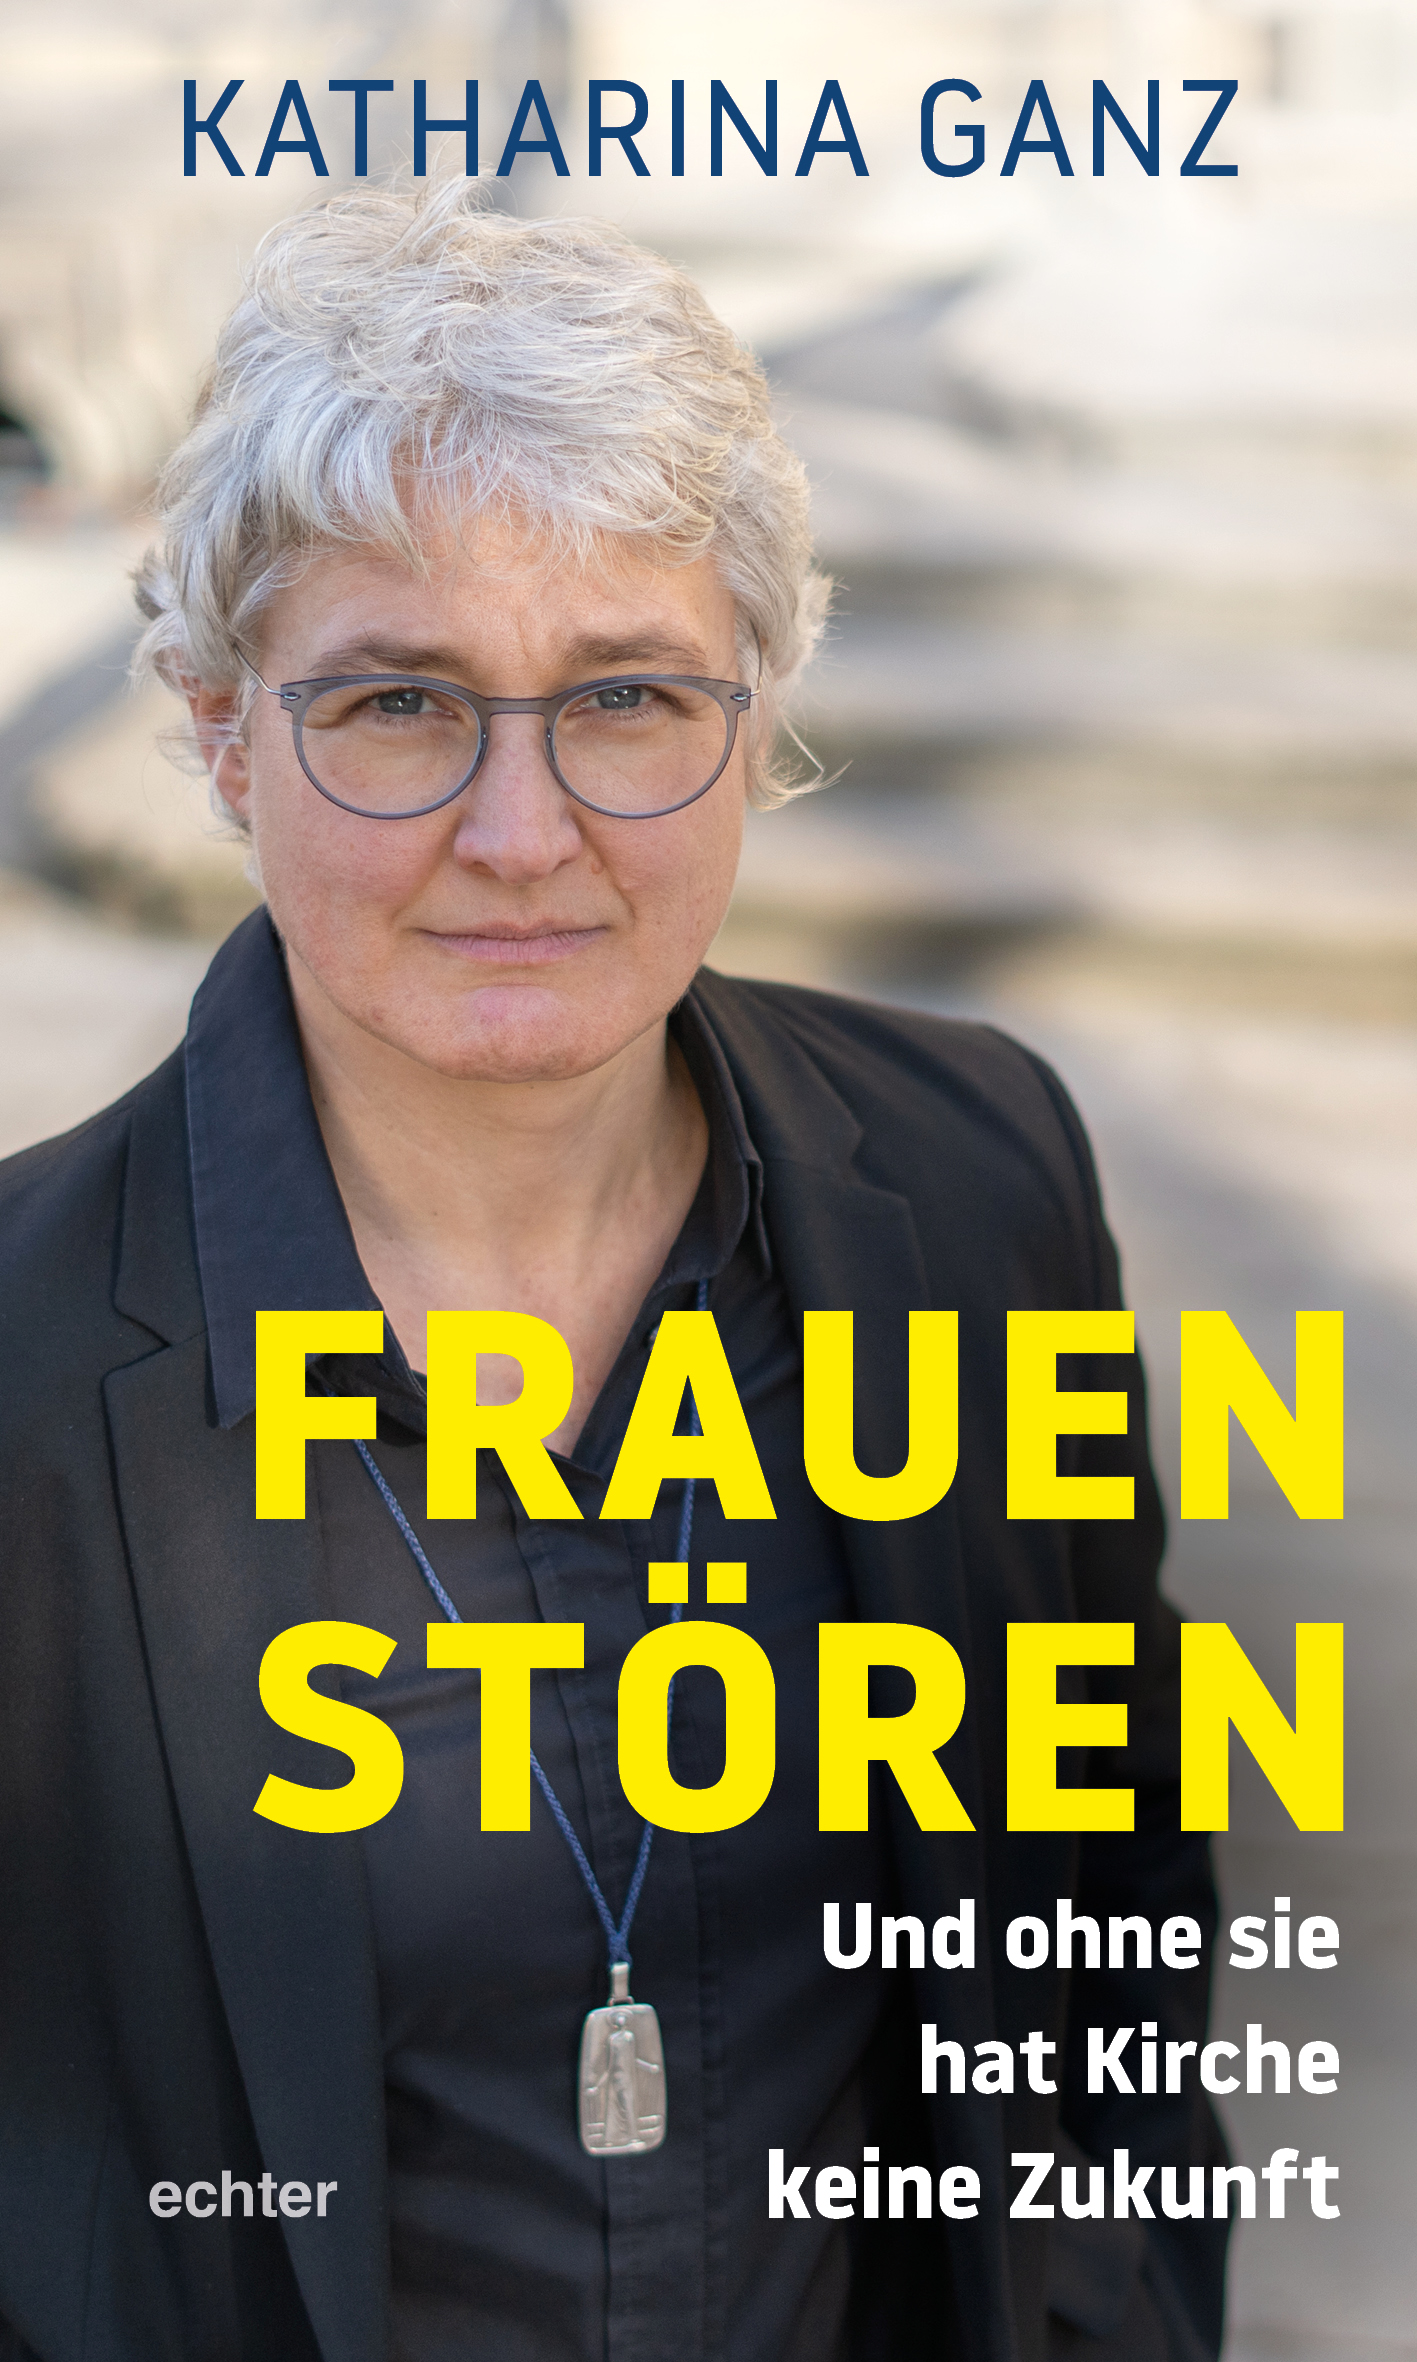 (c) Frauen stören/Echter Verlag